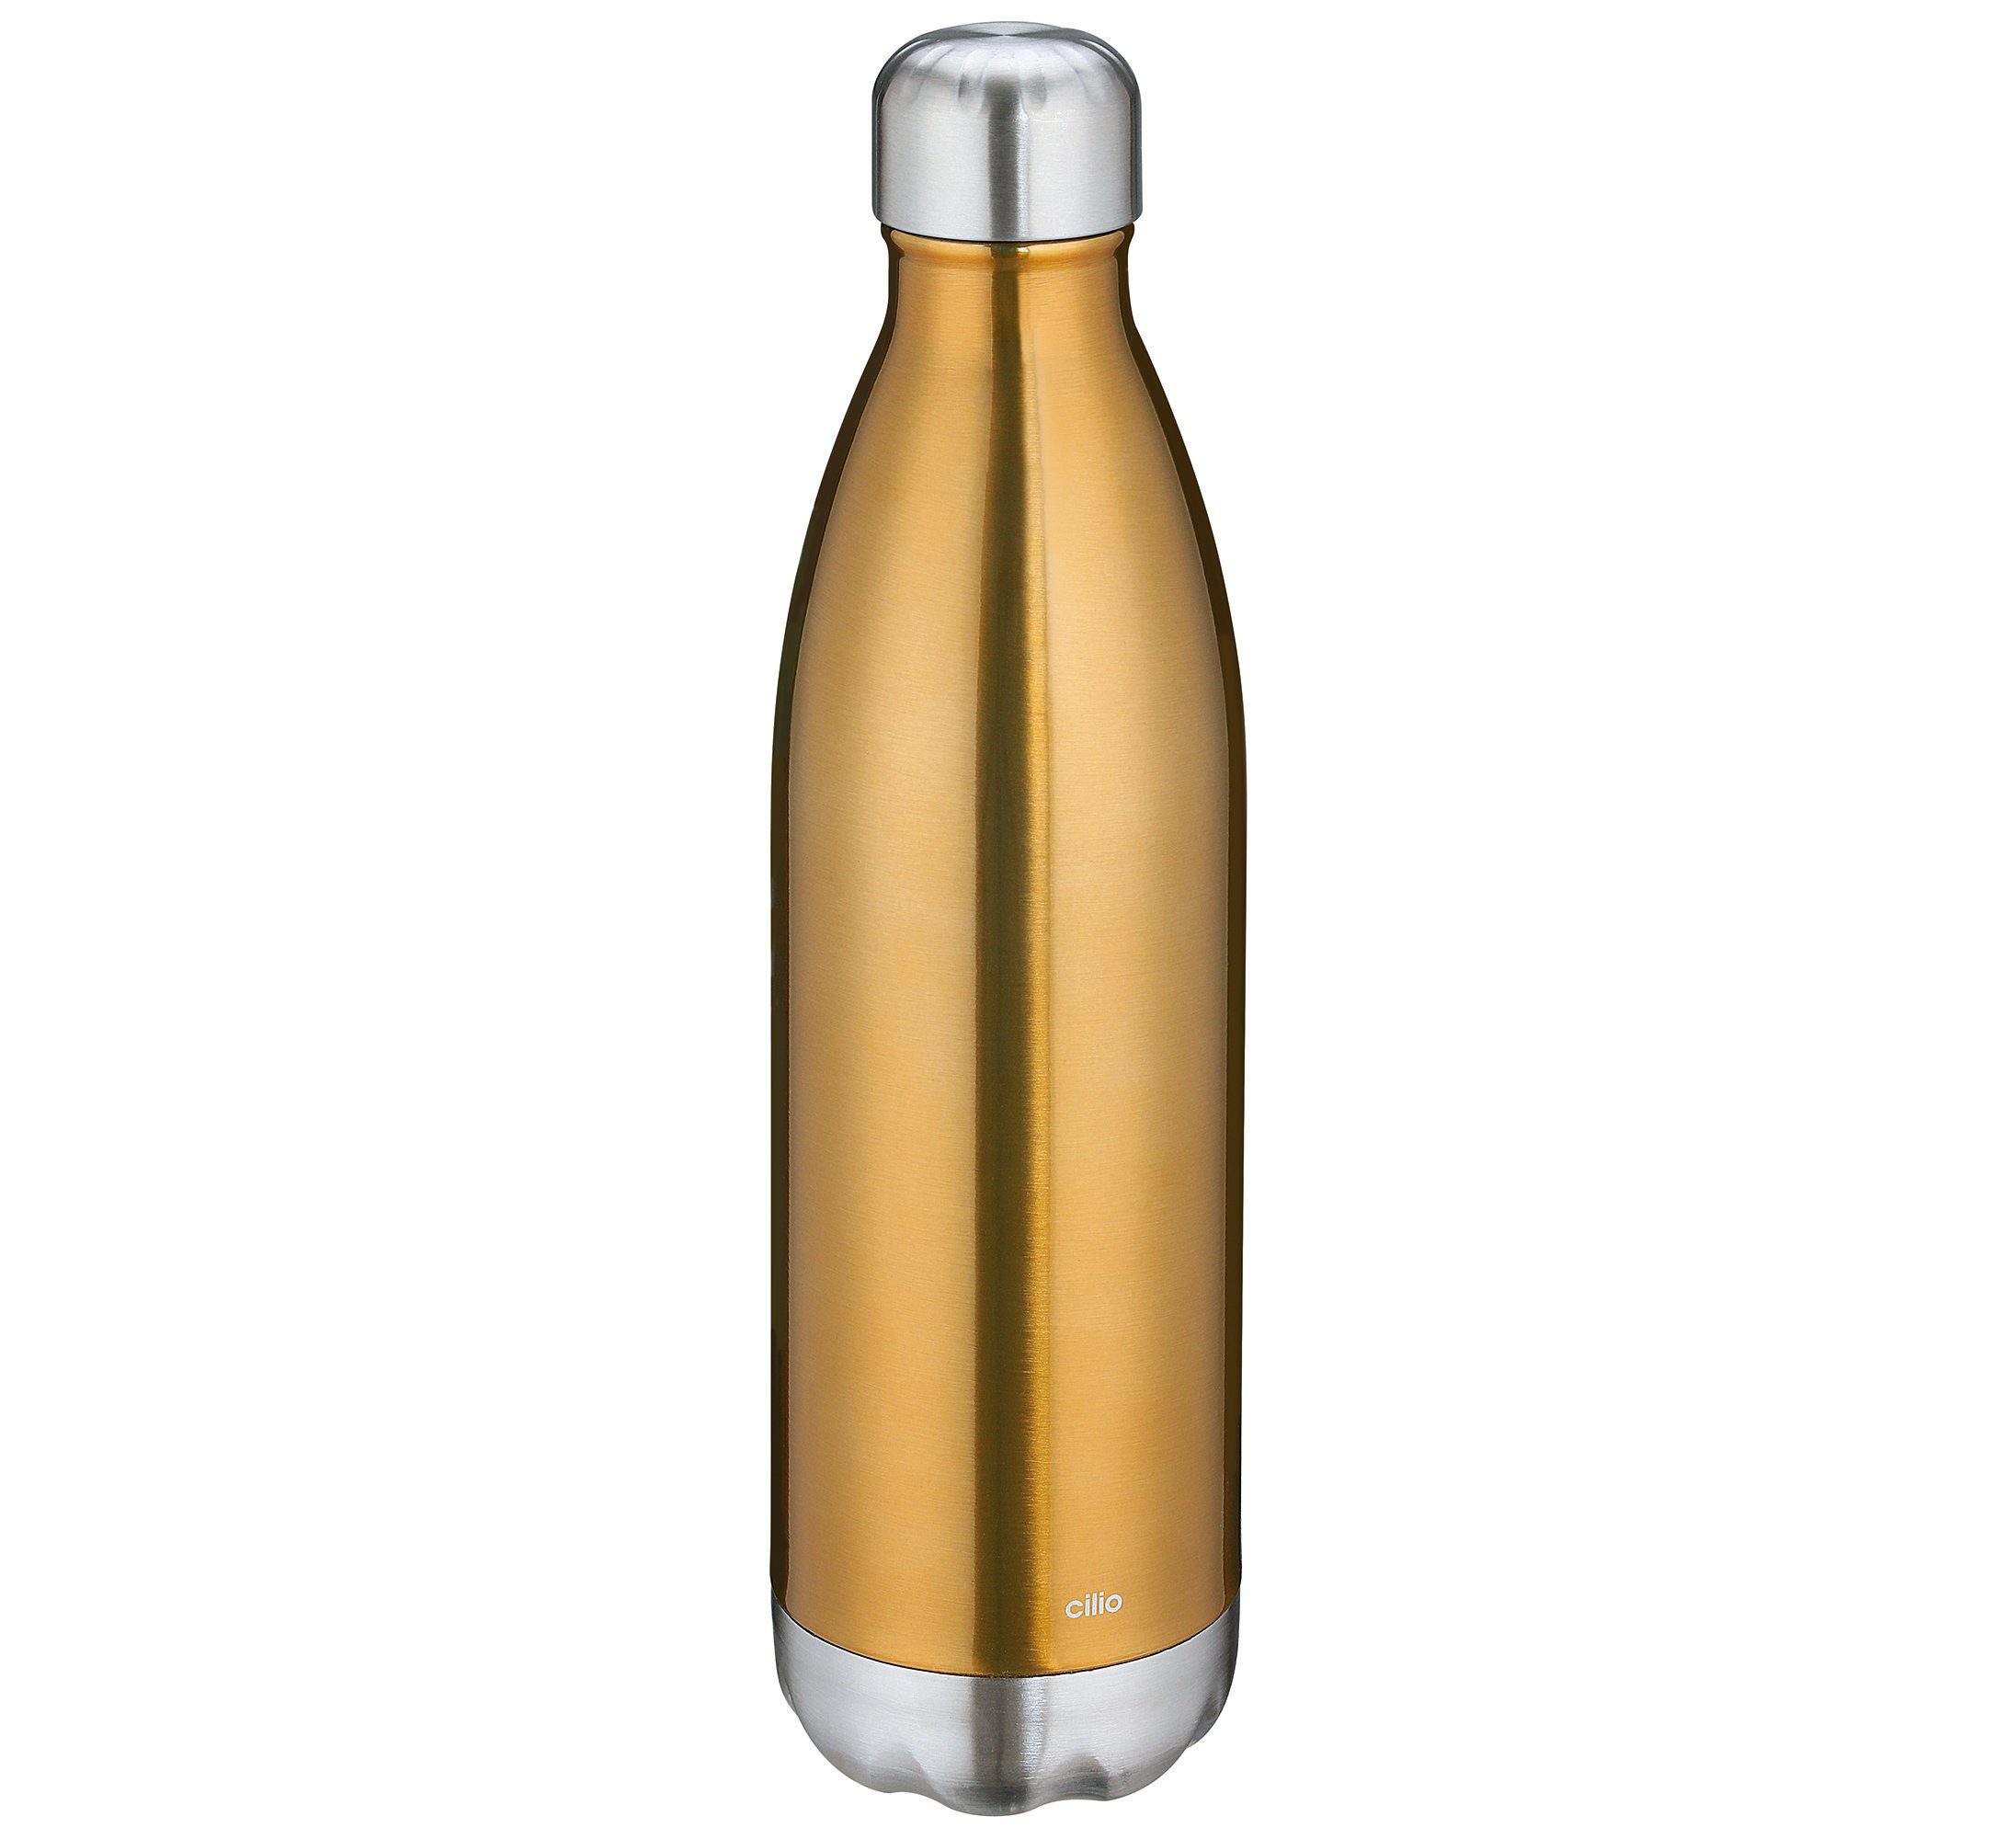 Cilio Thermoflasche Trinkflasche Isoliertrinkflasche Edelstahl cilio ELEGANTE 0,75l gold